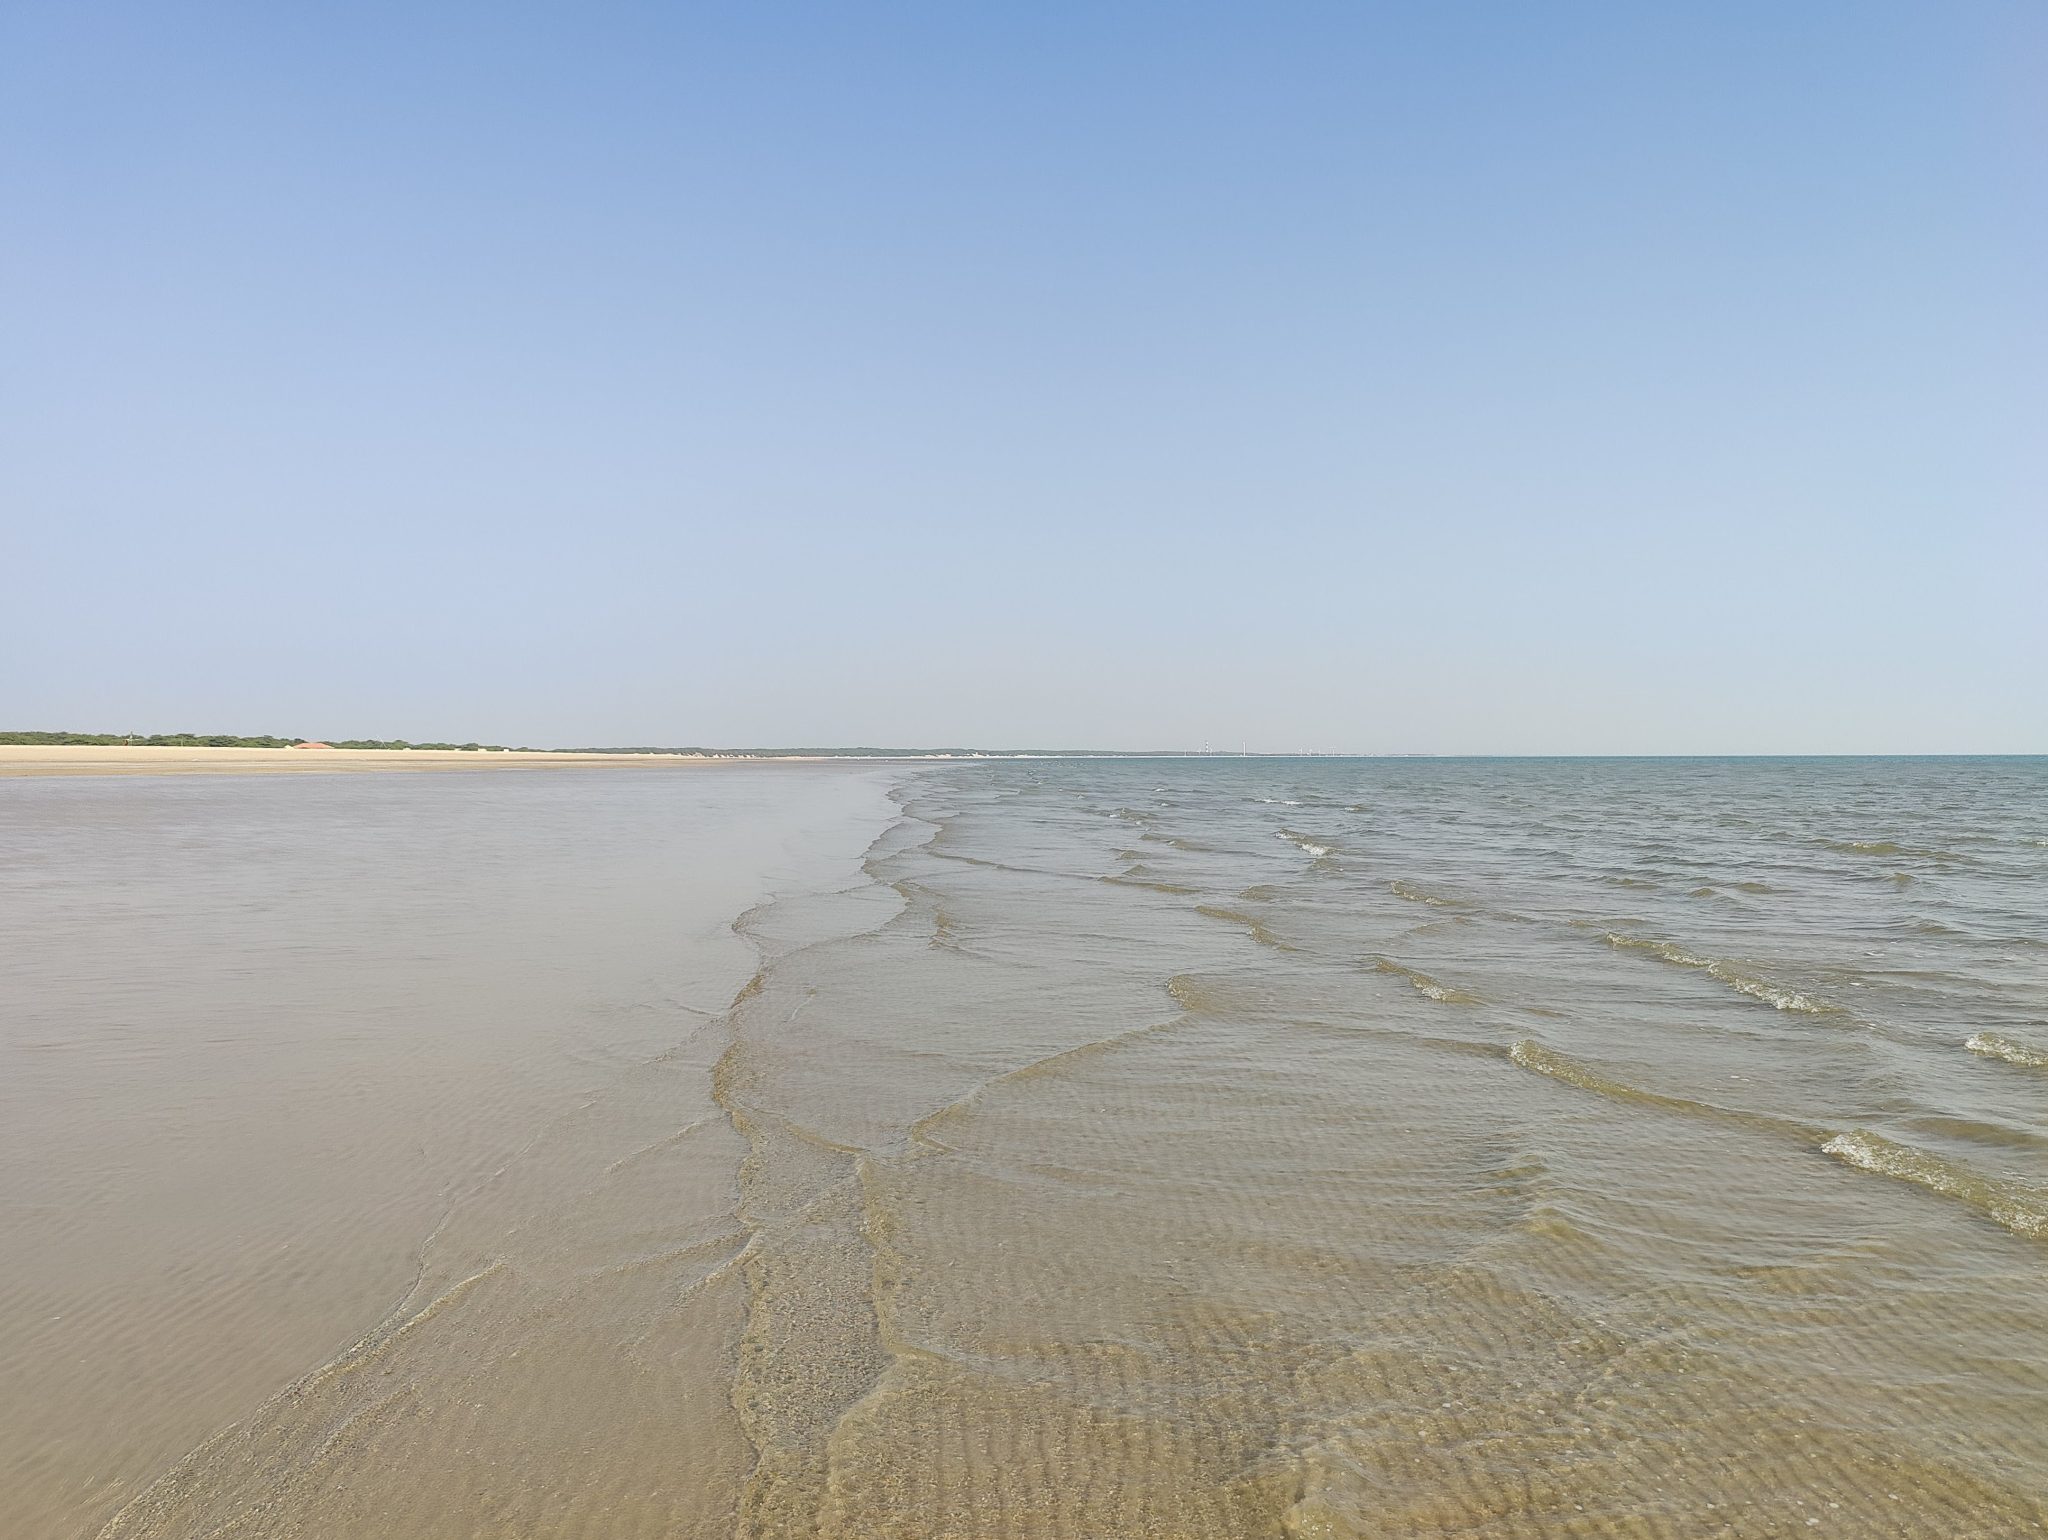 Beach photo with waves - Mandvi beach